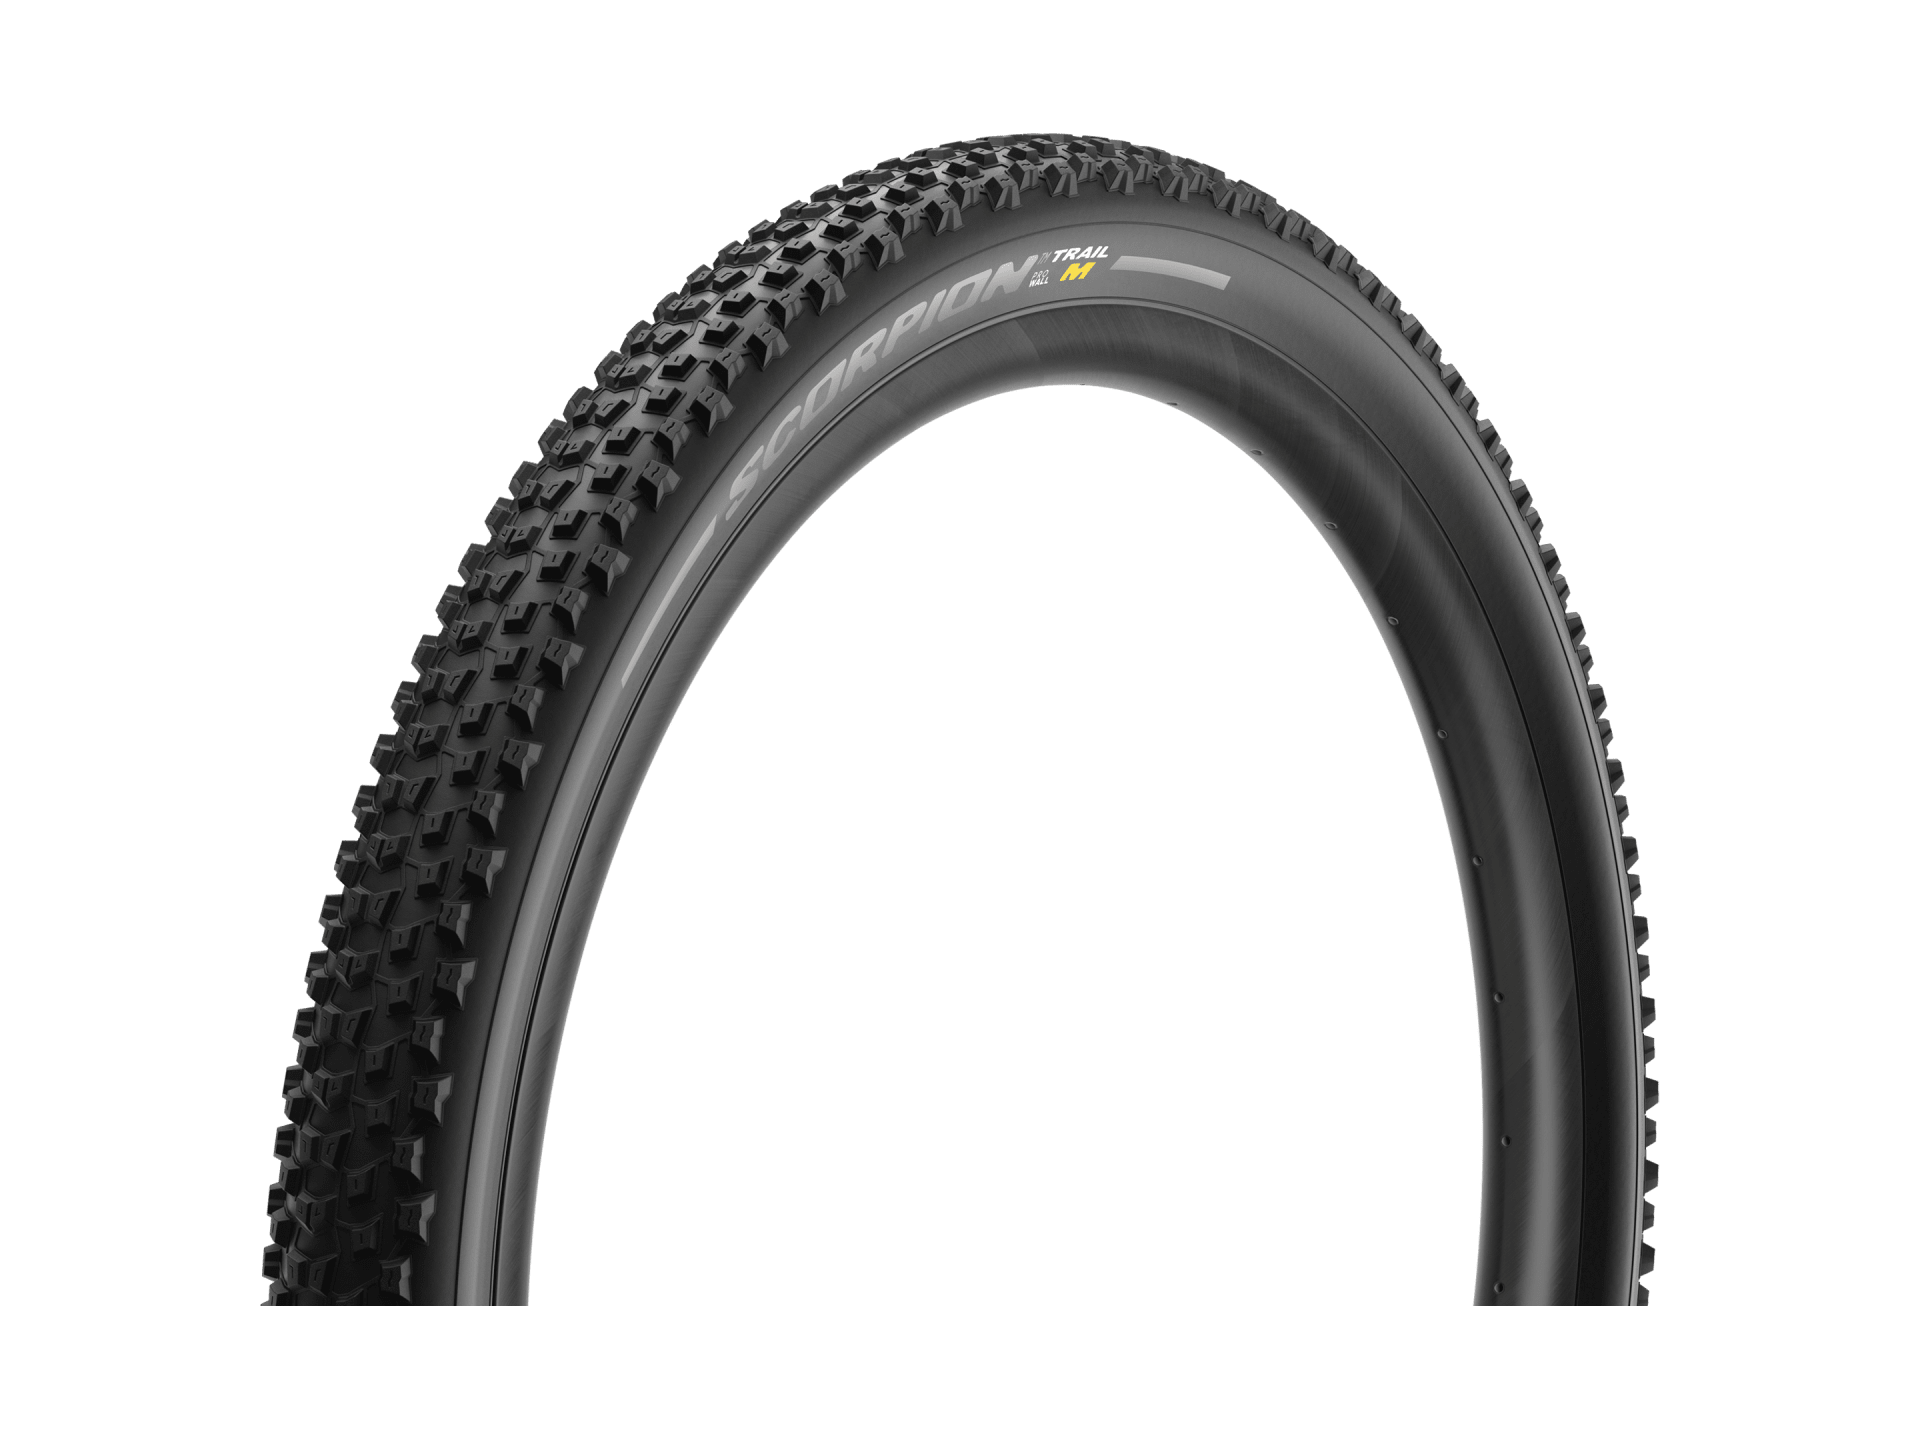 Pirelli Scorpion Trail M MTB Tire